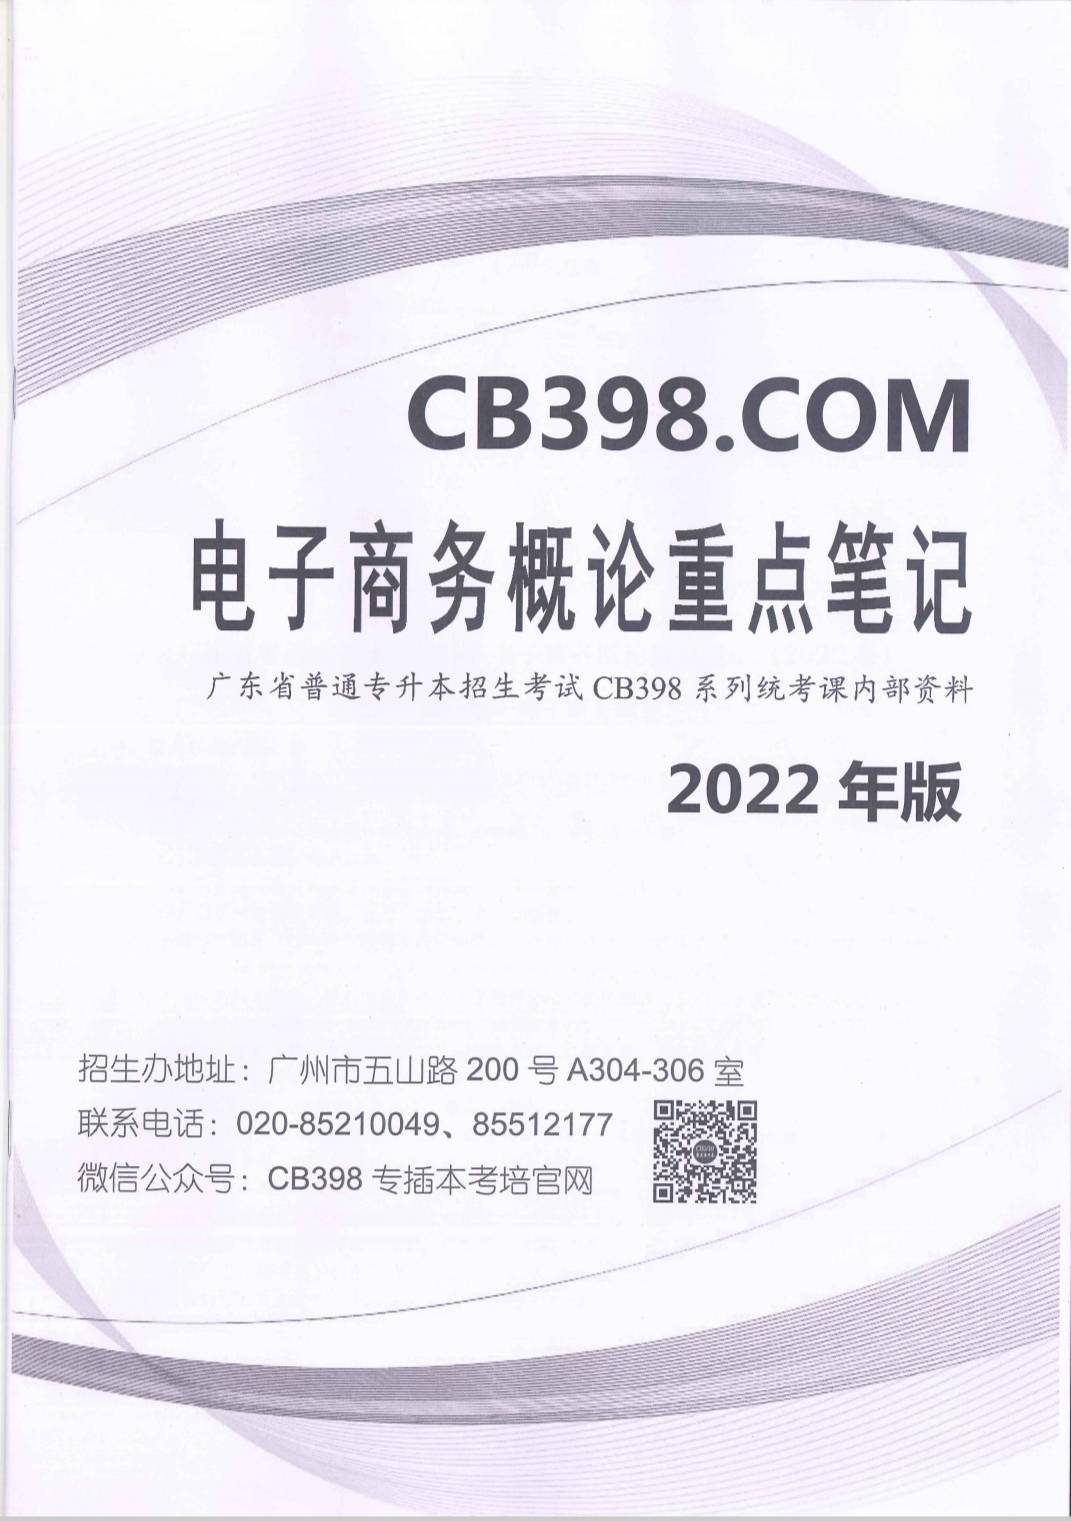 2022年cb398电子商务